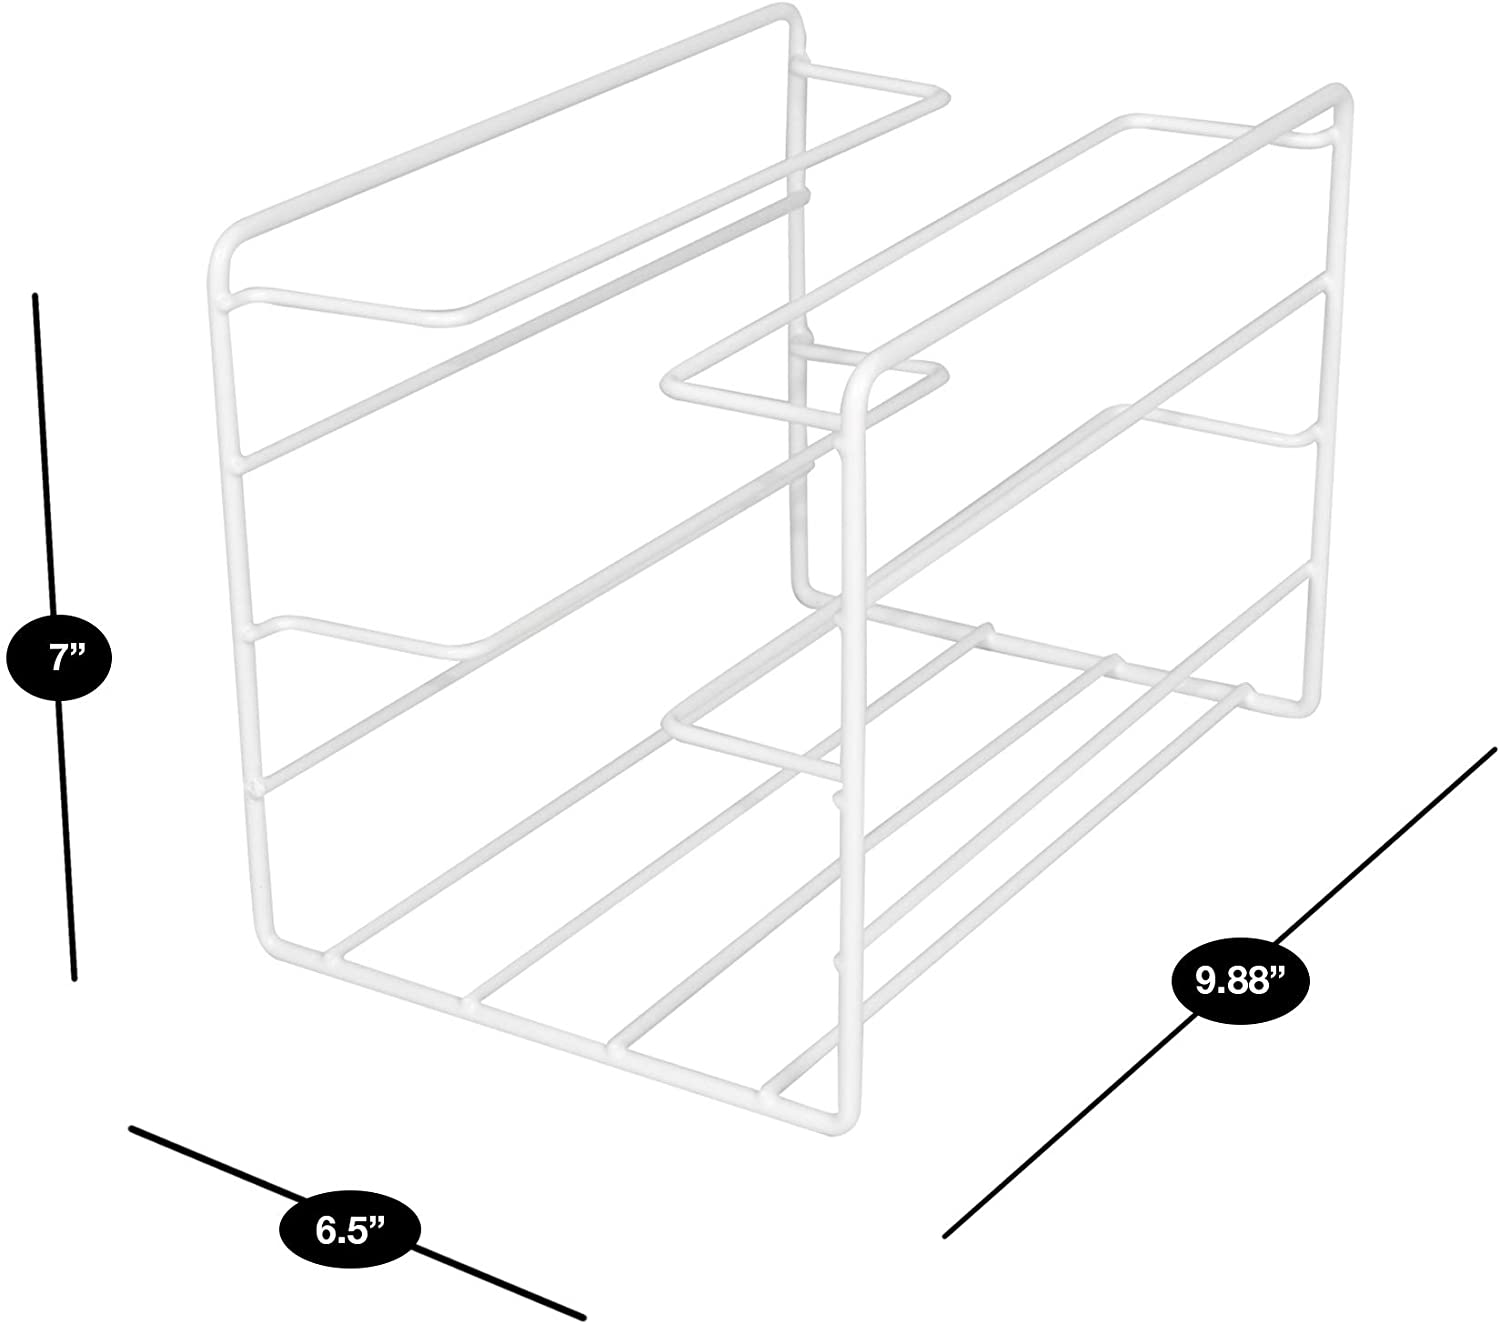 3-Tier Kitchen Foil Wrap Holder Organizer - White - Smart Design® 3